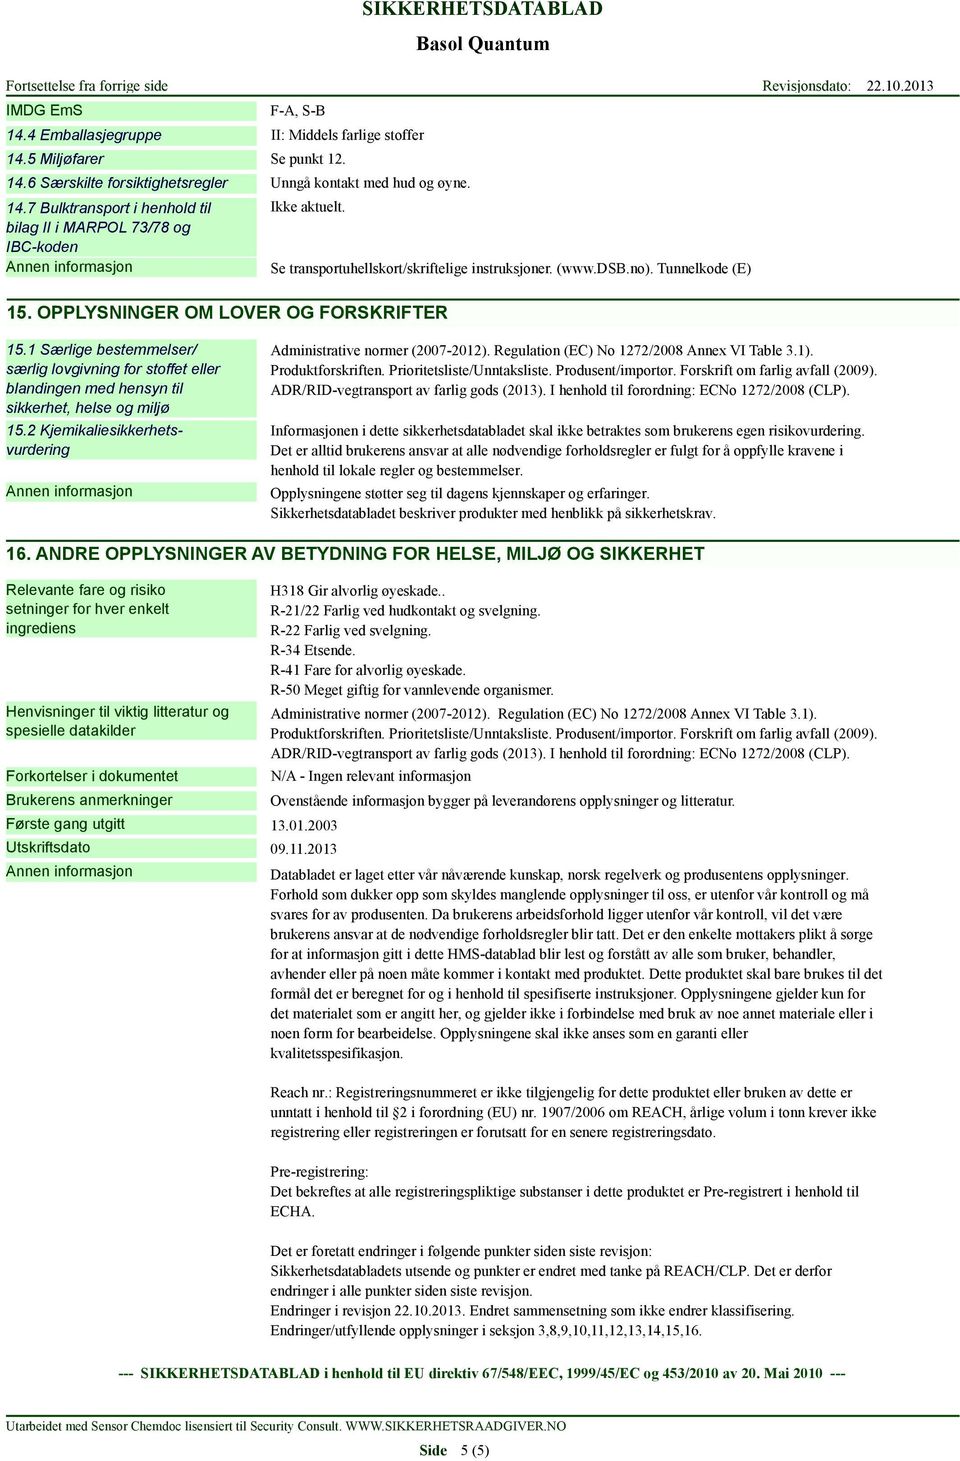 1 Særlige bestemmelser/ særlig lovgivning for stoffet eller blandingen med hensyn til sikkerhet, helse og miljø 15.2 Kjemikaliesikkerhetsvurdering Administrative normer (2007-2012).